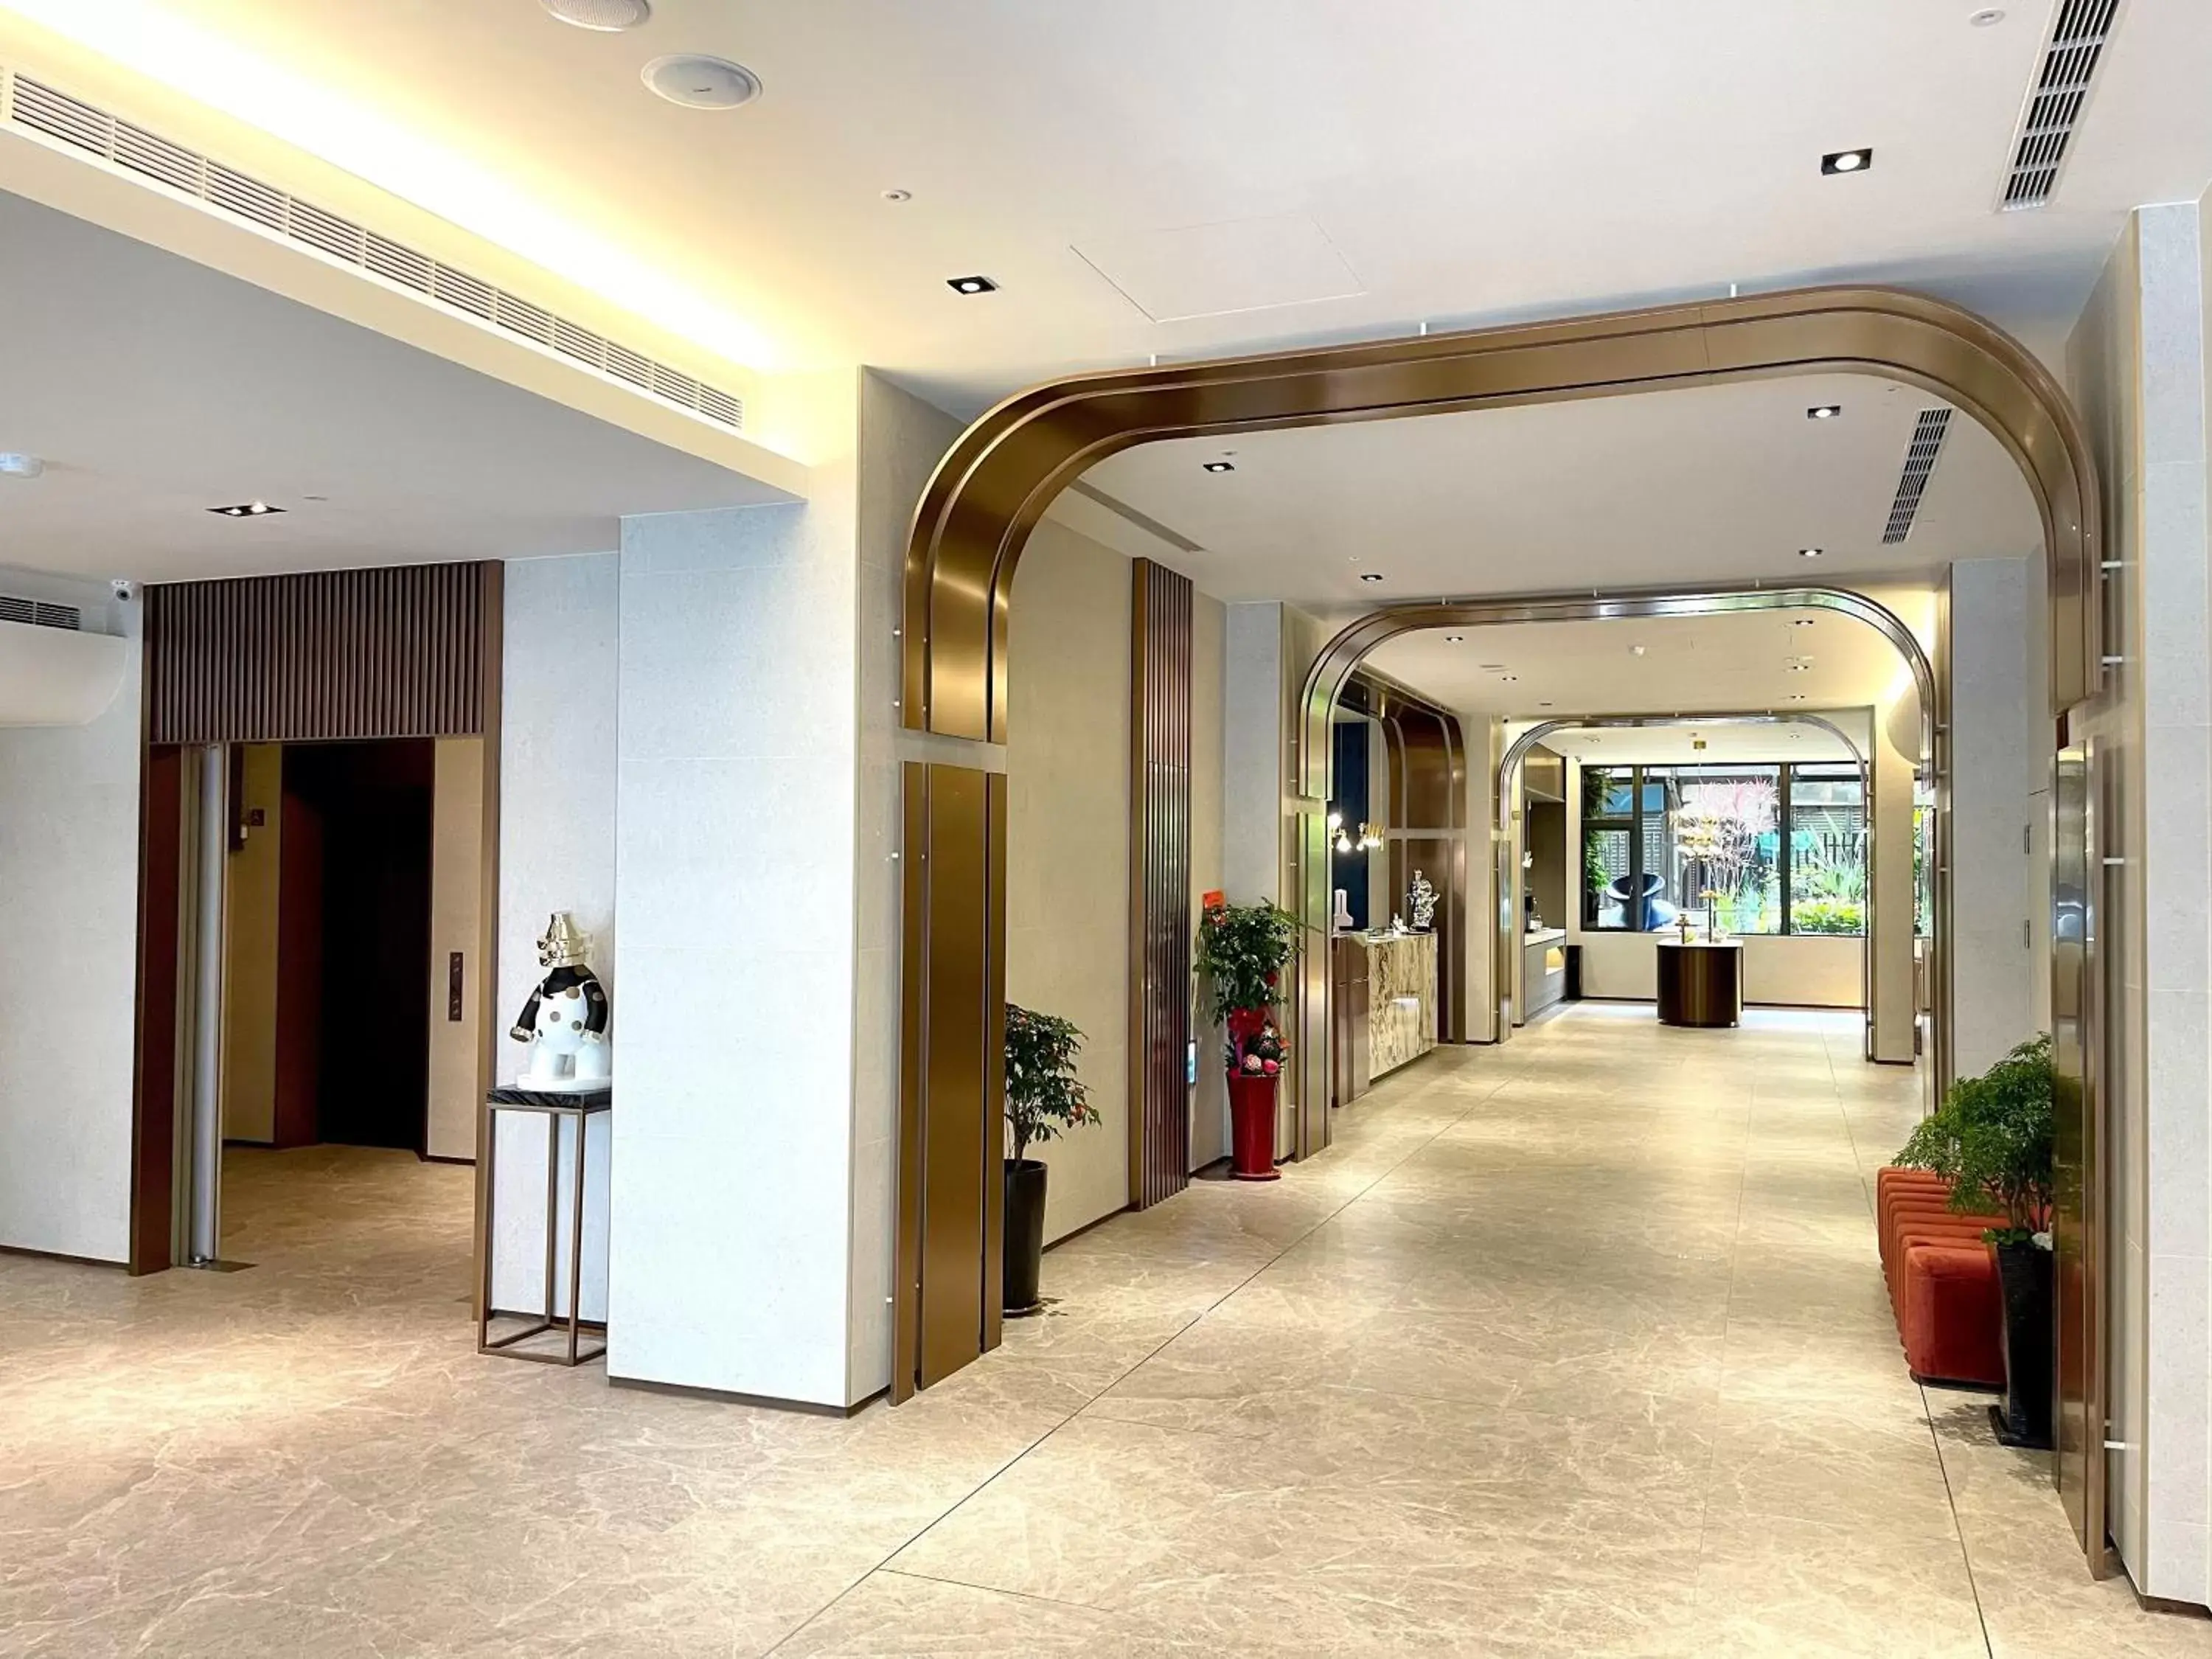 Lobby or reception, Lobby/Reception in Tenz Go Hotel